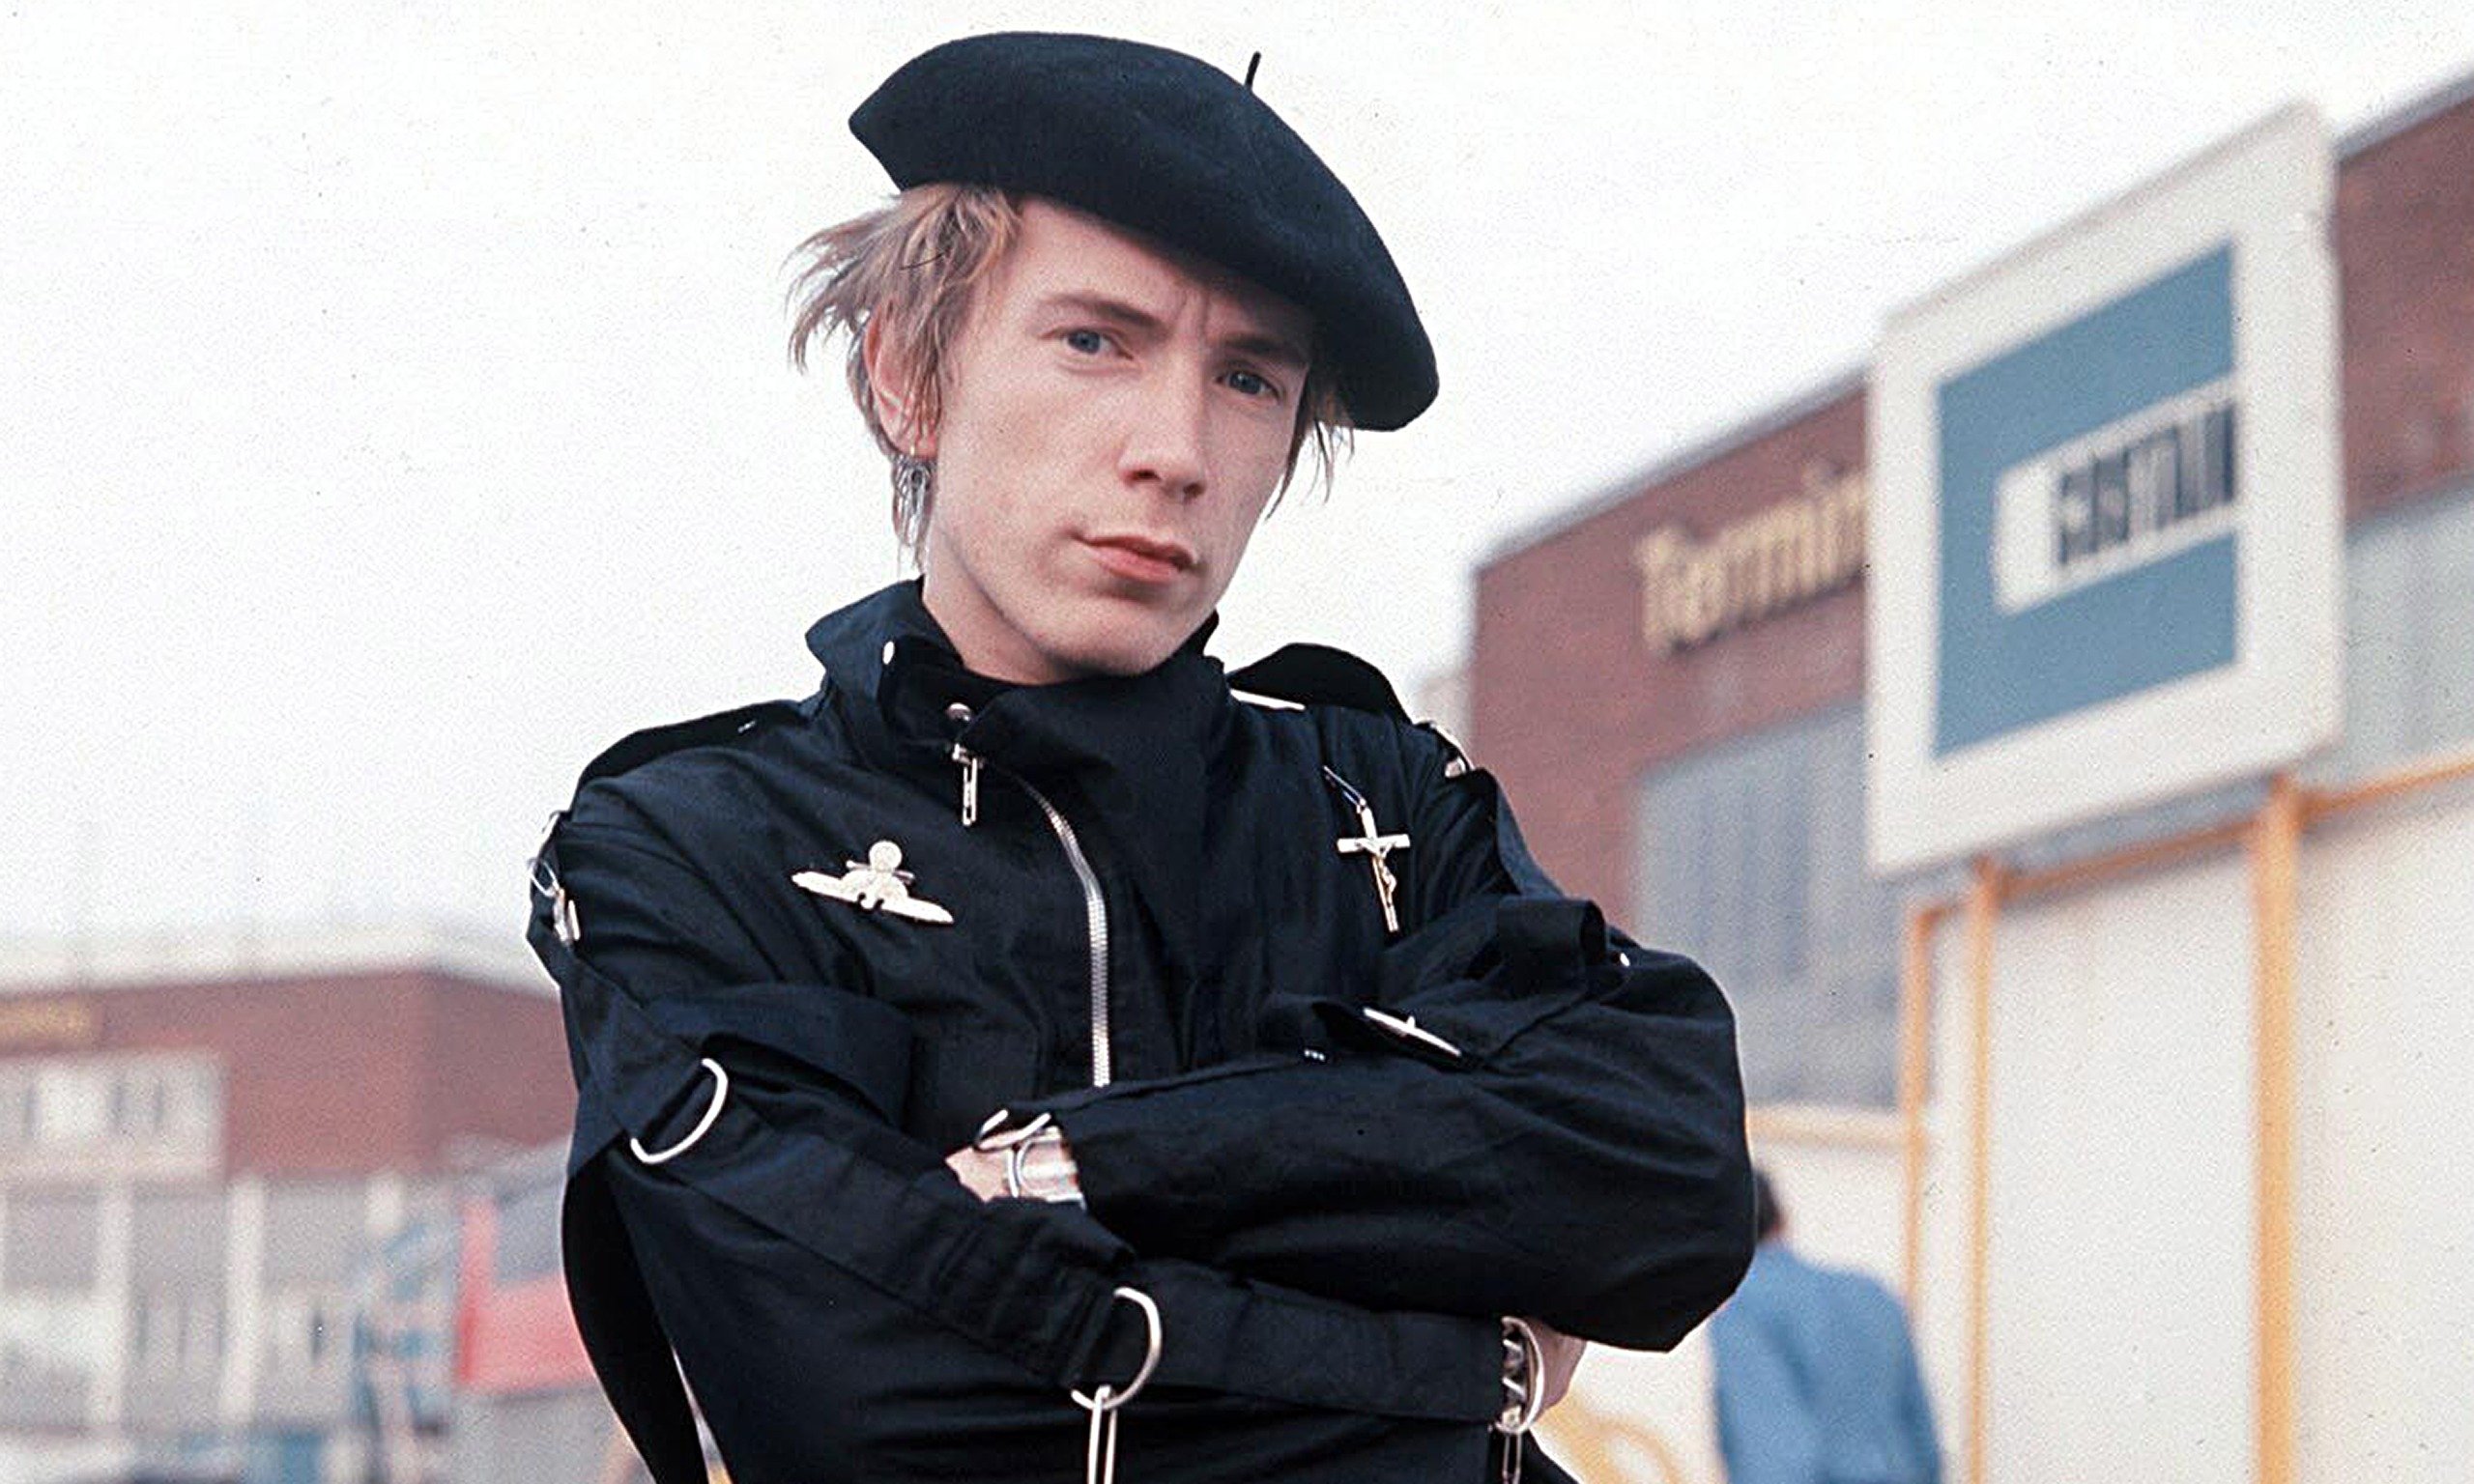 John Lydon Pictures | MetroLyrics